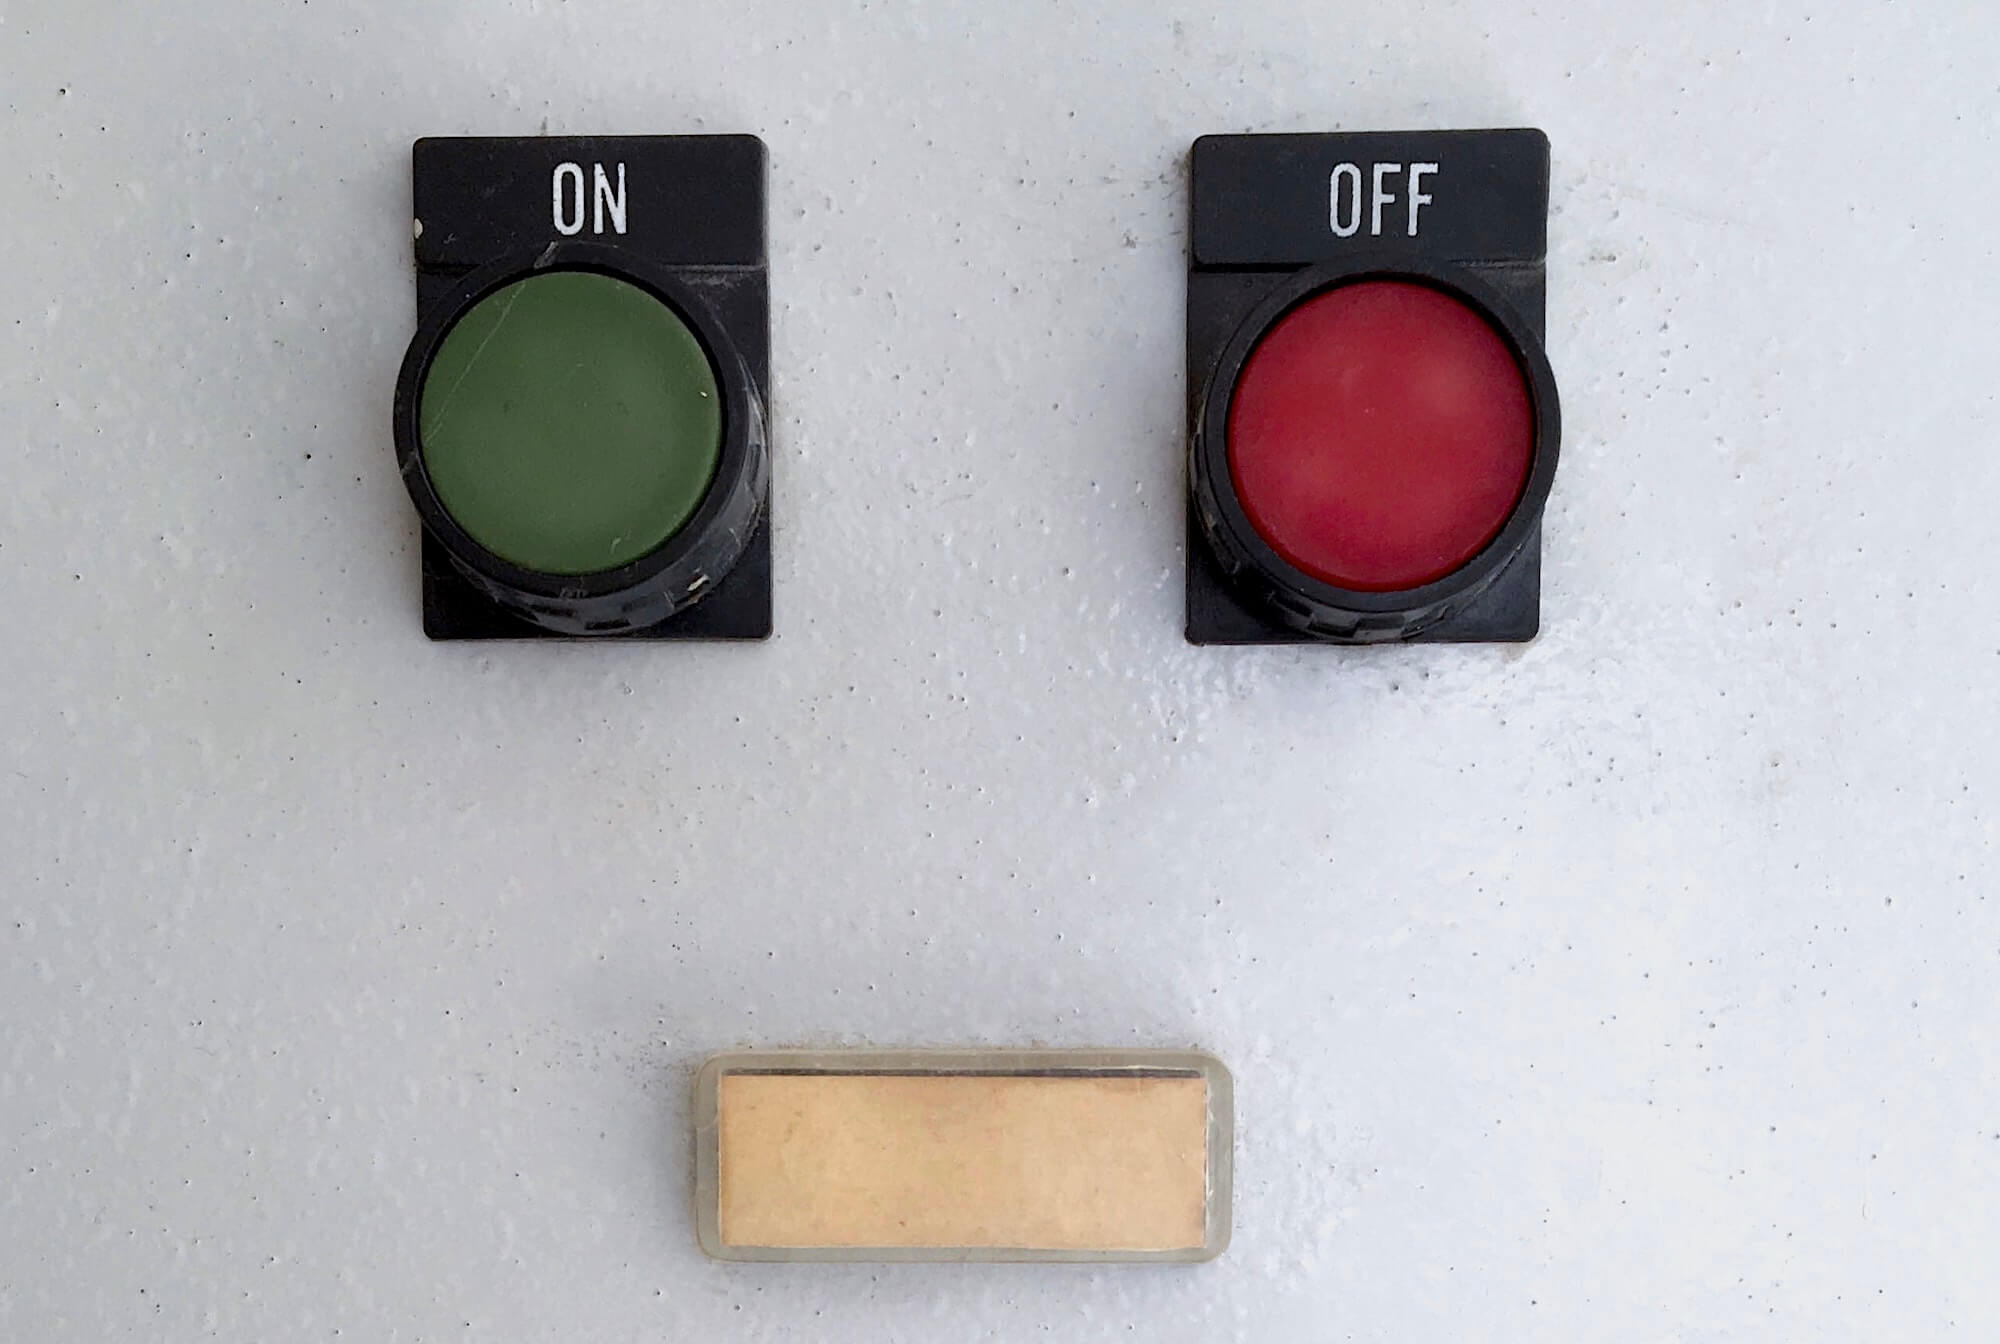 Три кнопки разных цветов, зелёная подписана ON, красная – OFF